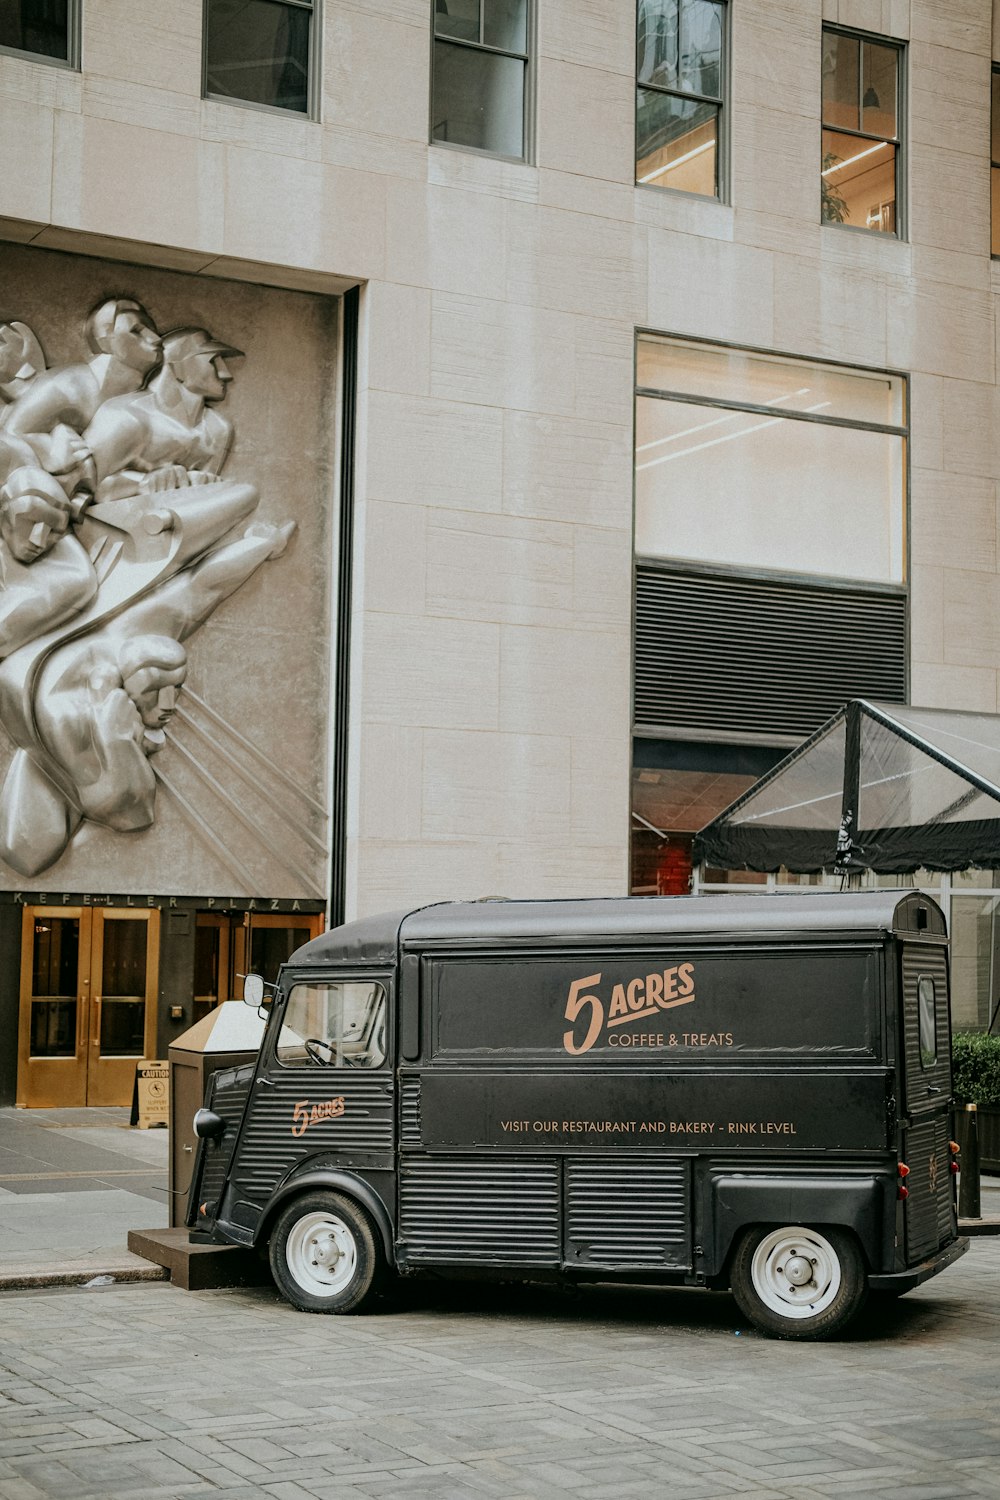 Un camión de comida estacionado frente a un edificio